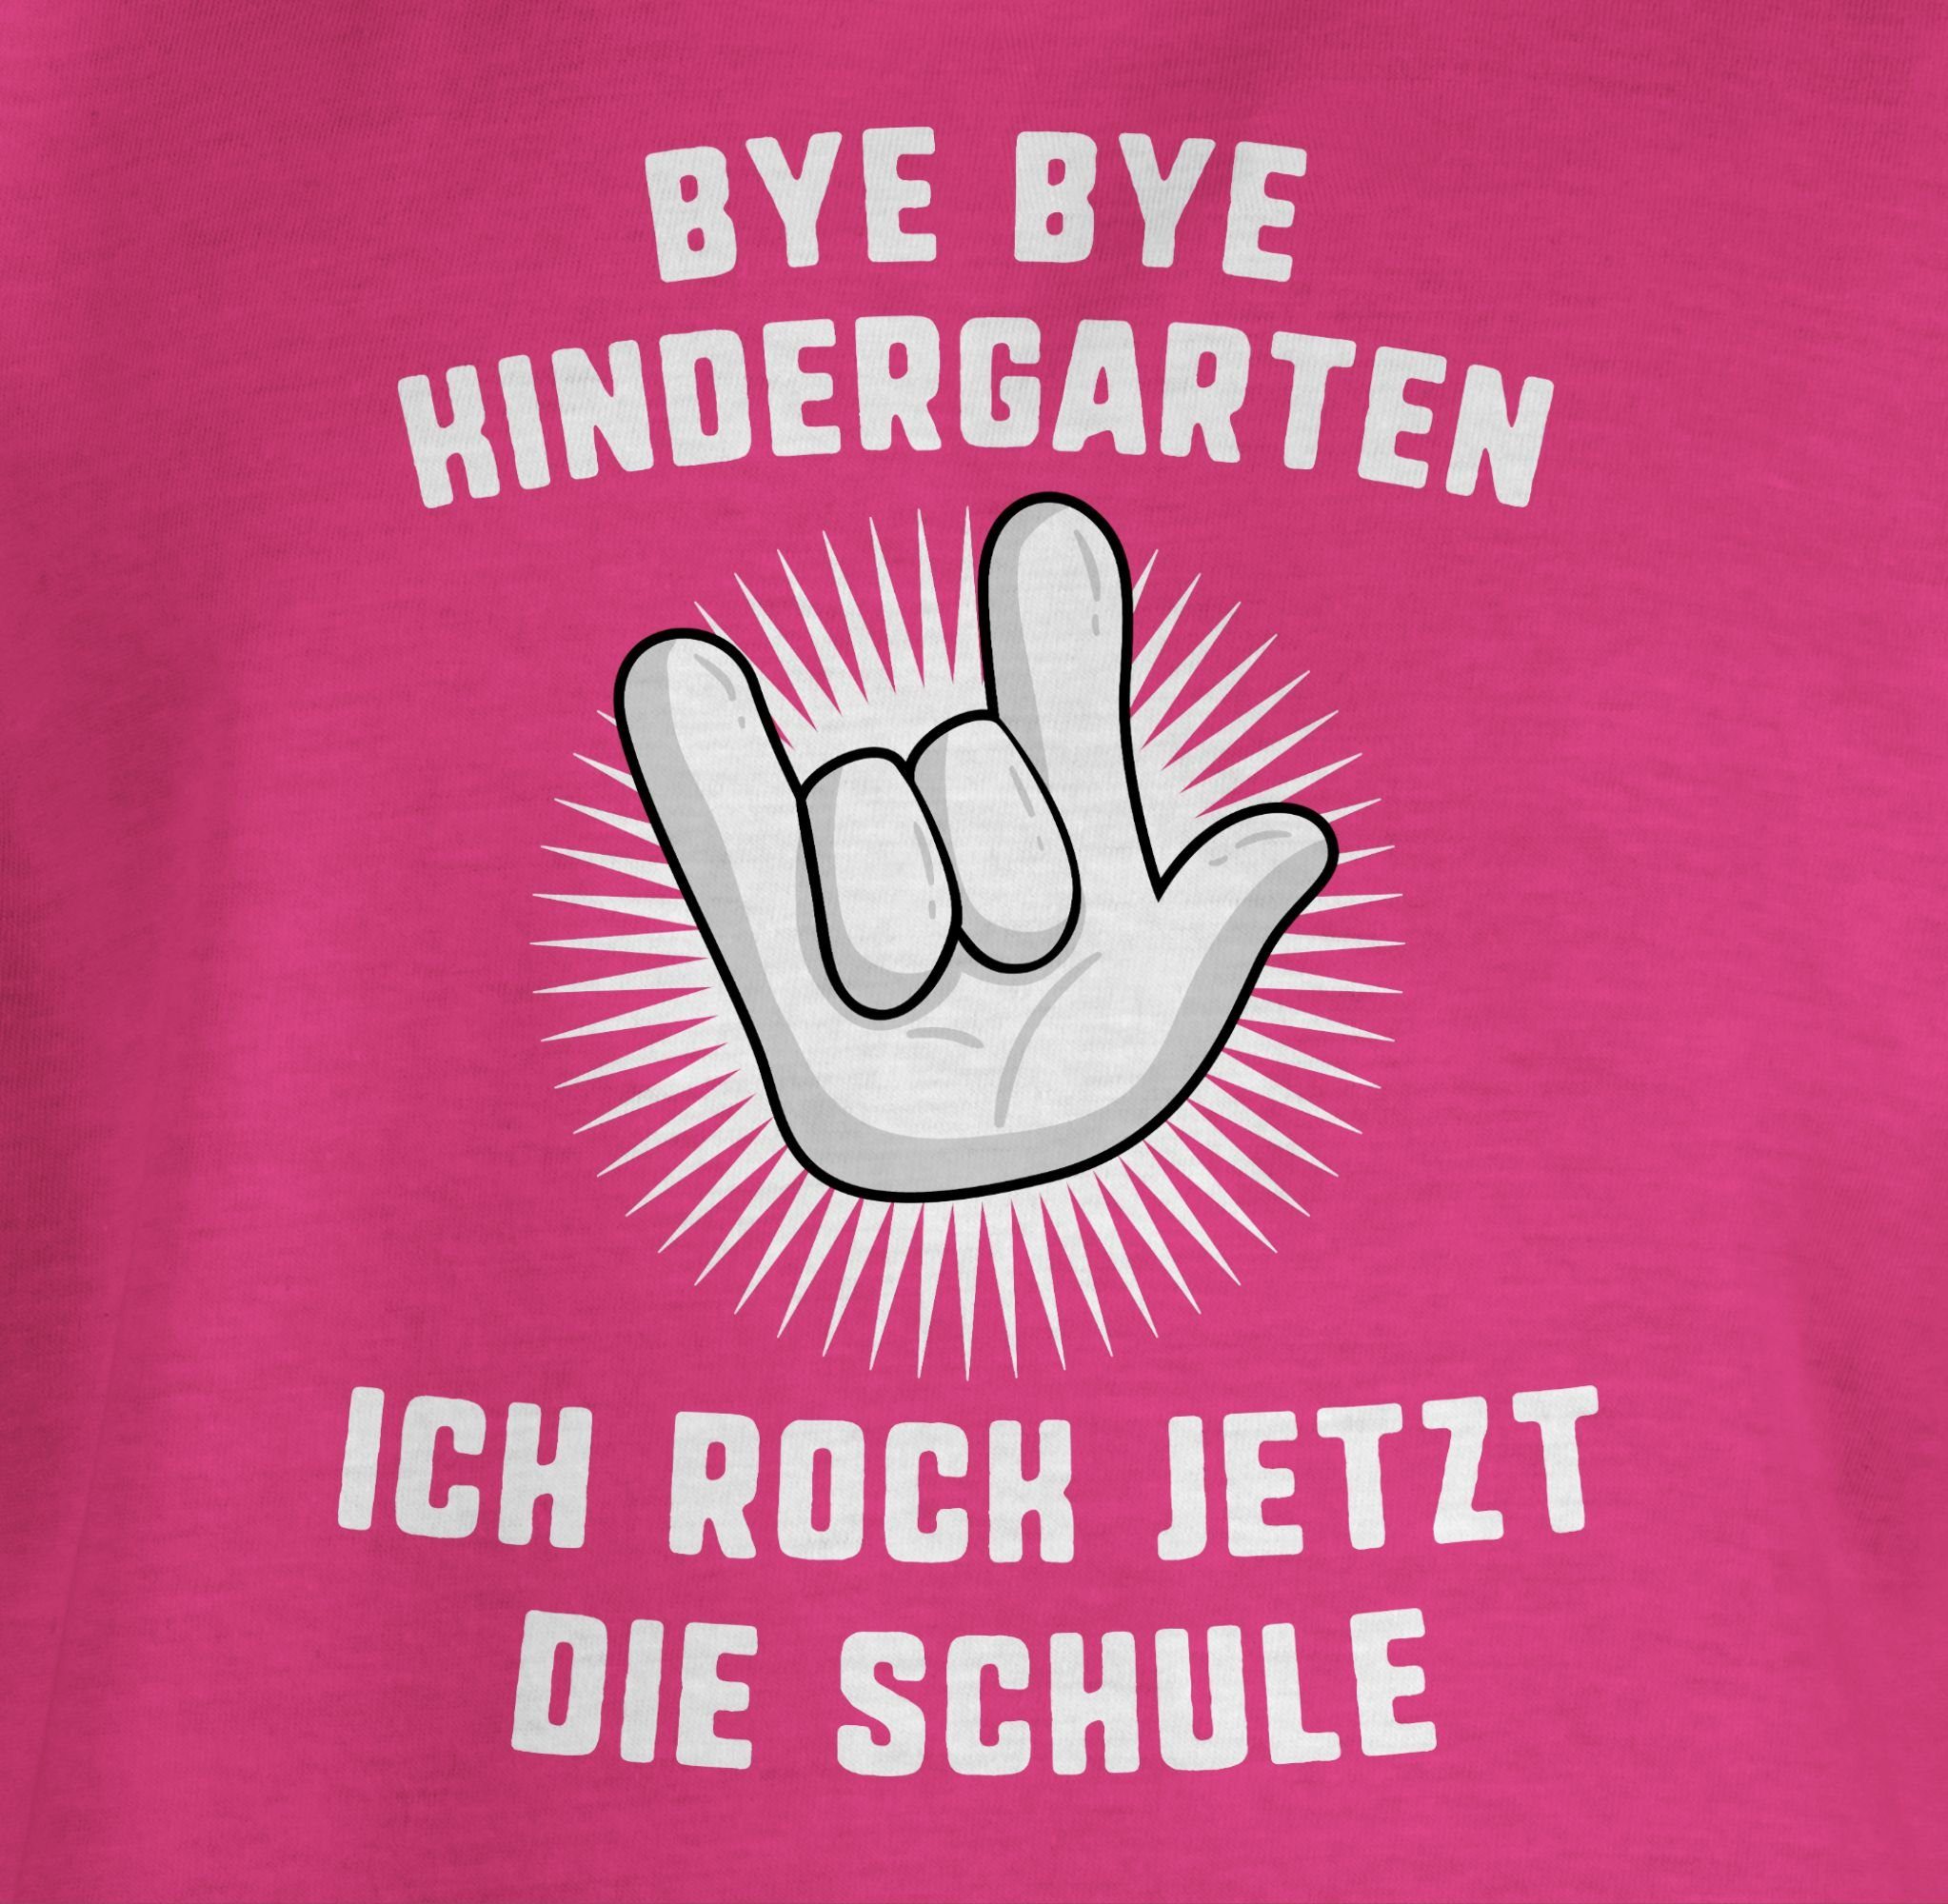 Hand Fuchsia Mädchen Ich 1 Kindergarten Bye Bye die Einschulung jetzt Shirtracer Schule rock T-Shirt